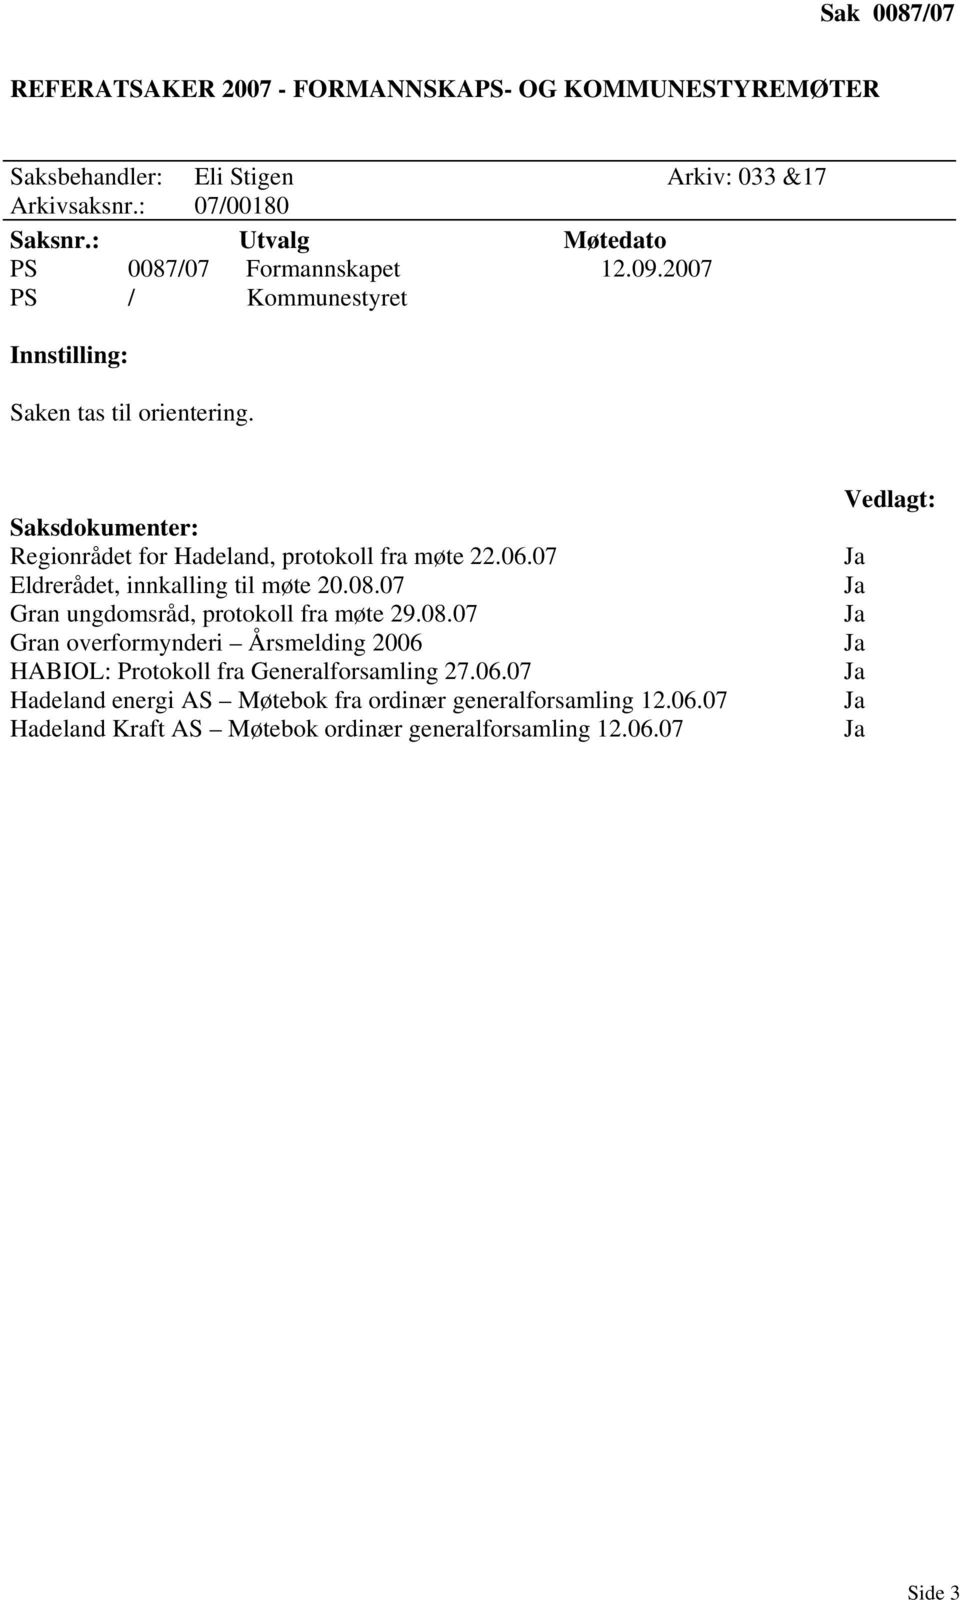 Saksdokumenter: Regionrådet for Hadeland, protokoll fra møte 22.06.07 Eldrerådet, innkalling til møte 20.08.